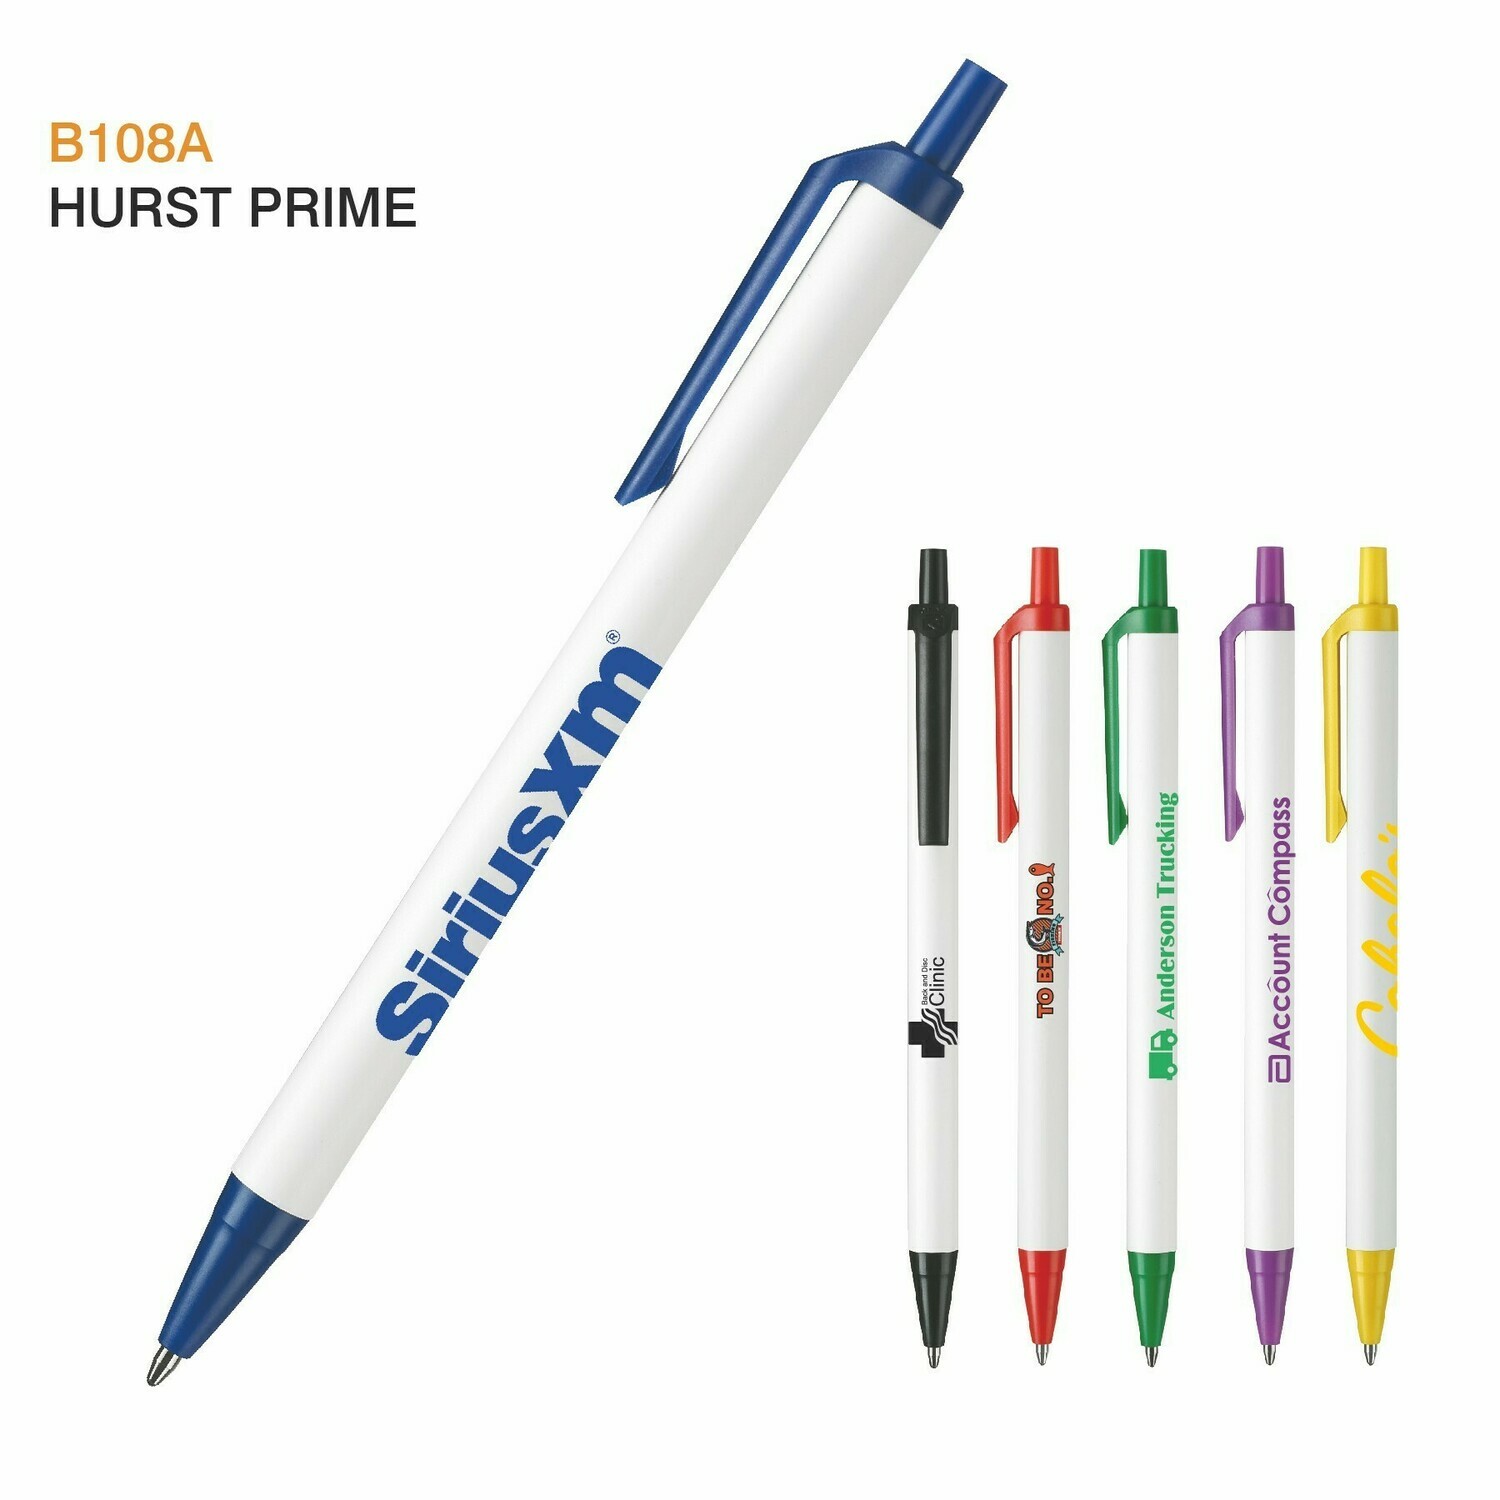 RiteLine Hurst Prime Pen